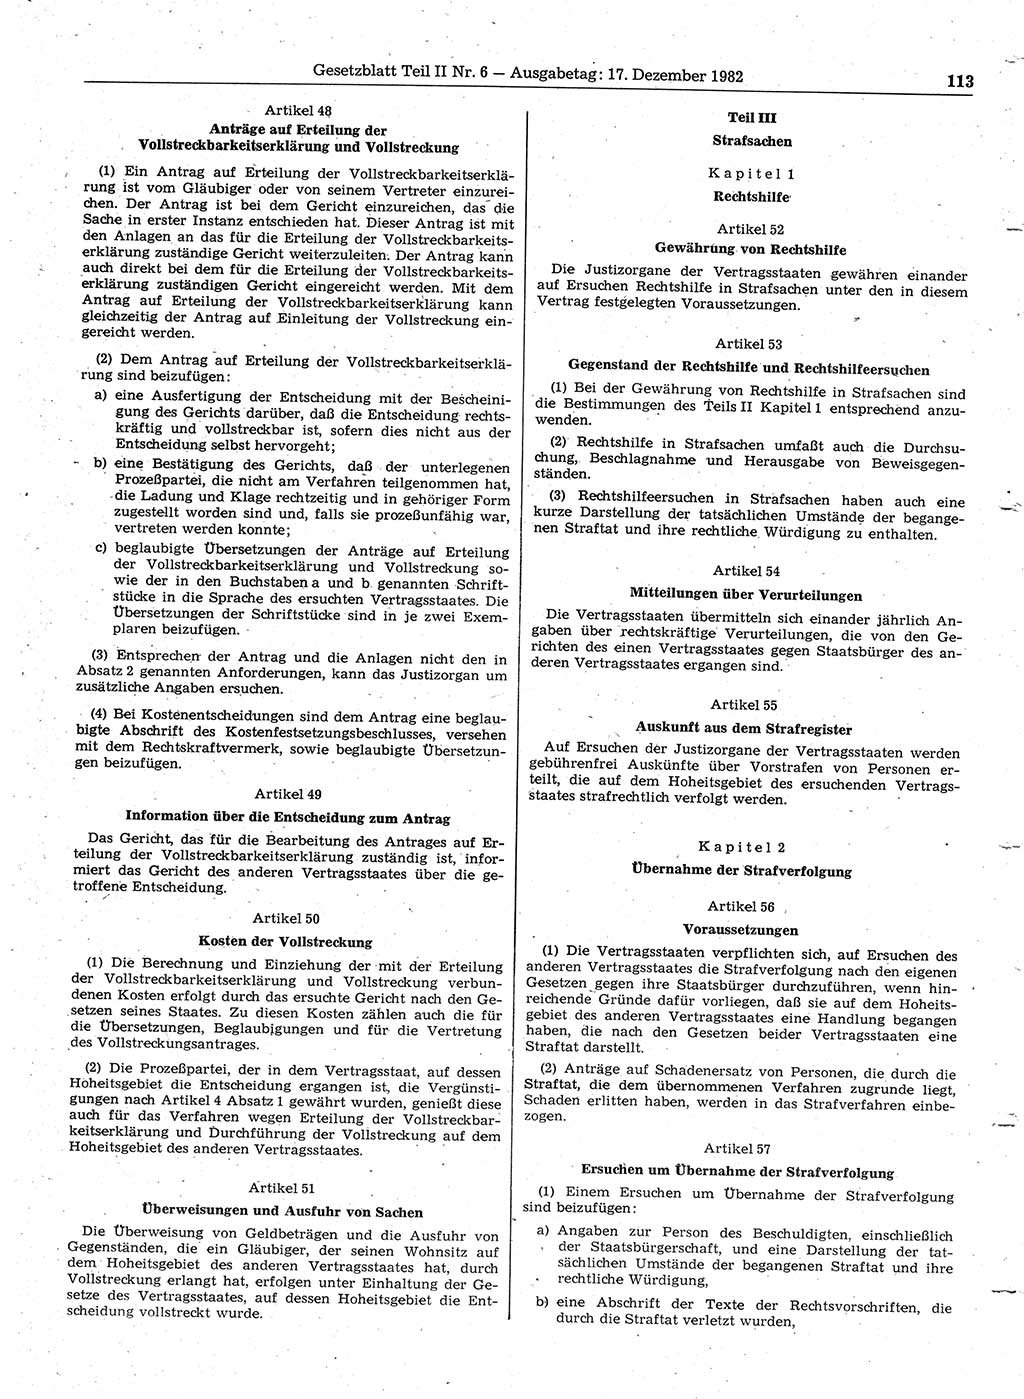 Gesetzblatt (GBl.) der Deutschen Demokratischen Republik (DDR) Teil ⅠⅠ 1982, Seite 113 (GBl. DDR ⅠⅠ 1982, S. 113)